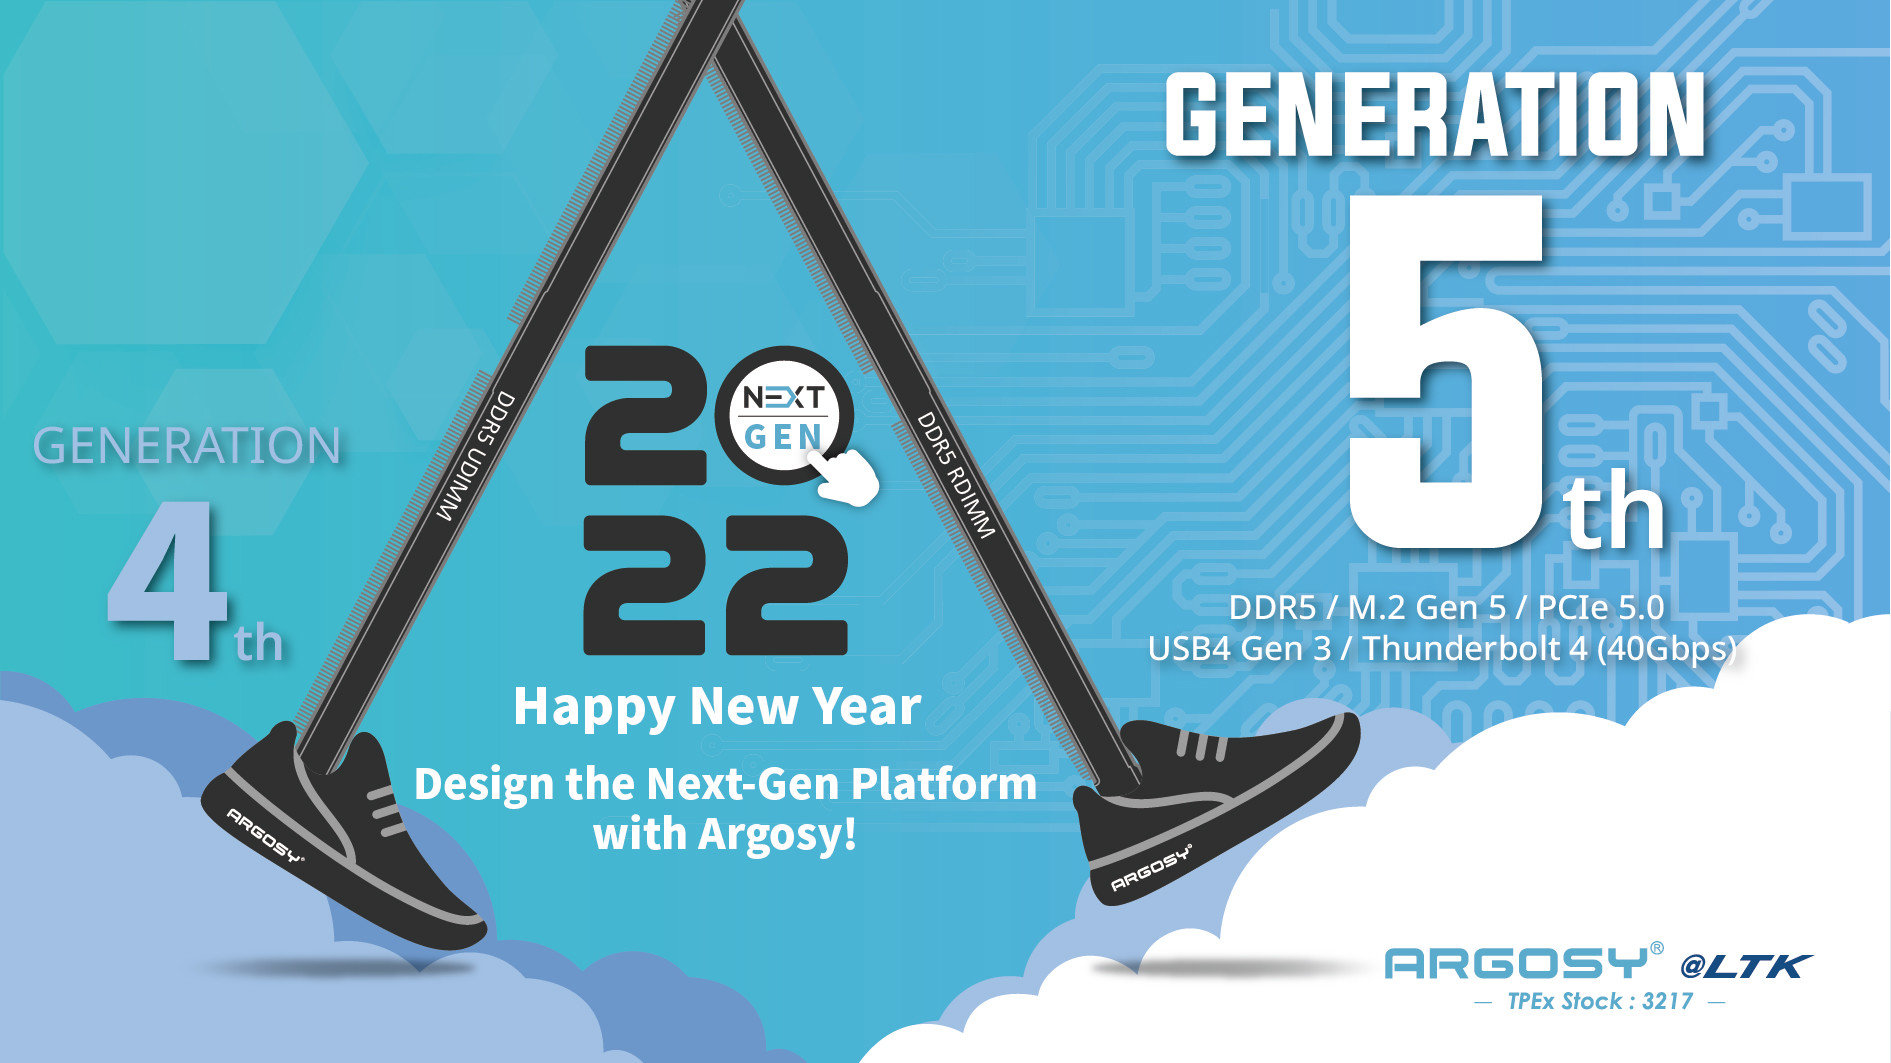 Design the Gen 5 platform in 2022 with Argosy- DDR5, M.2 Gen 5, PCIe 5.0, USB4, Thunderbolt 4